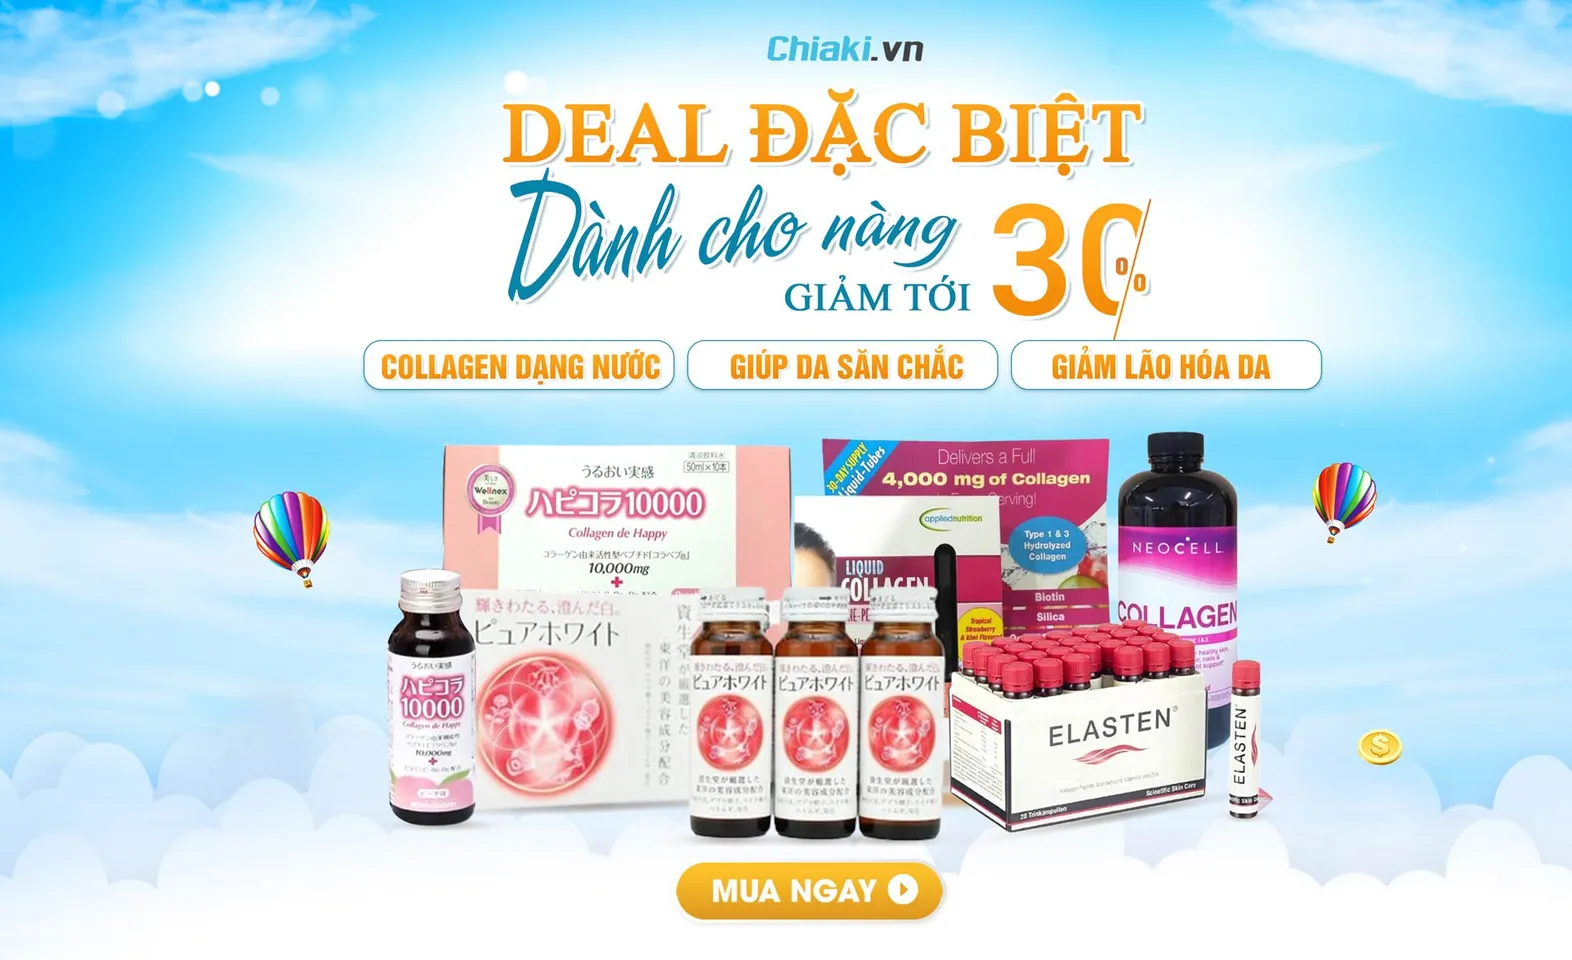 Chiaki Sale Collagen Nước Deal đặc biệt dành cho nàng giảm tới 30%